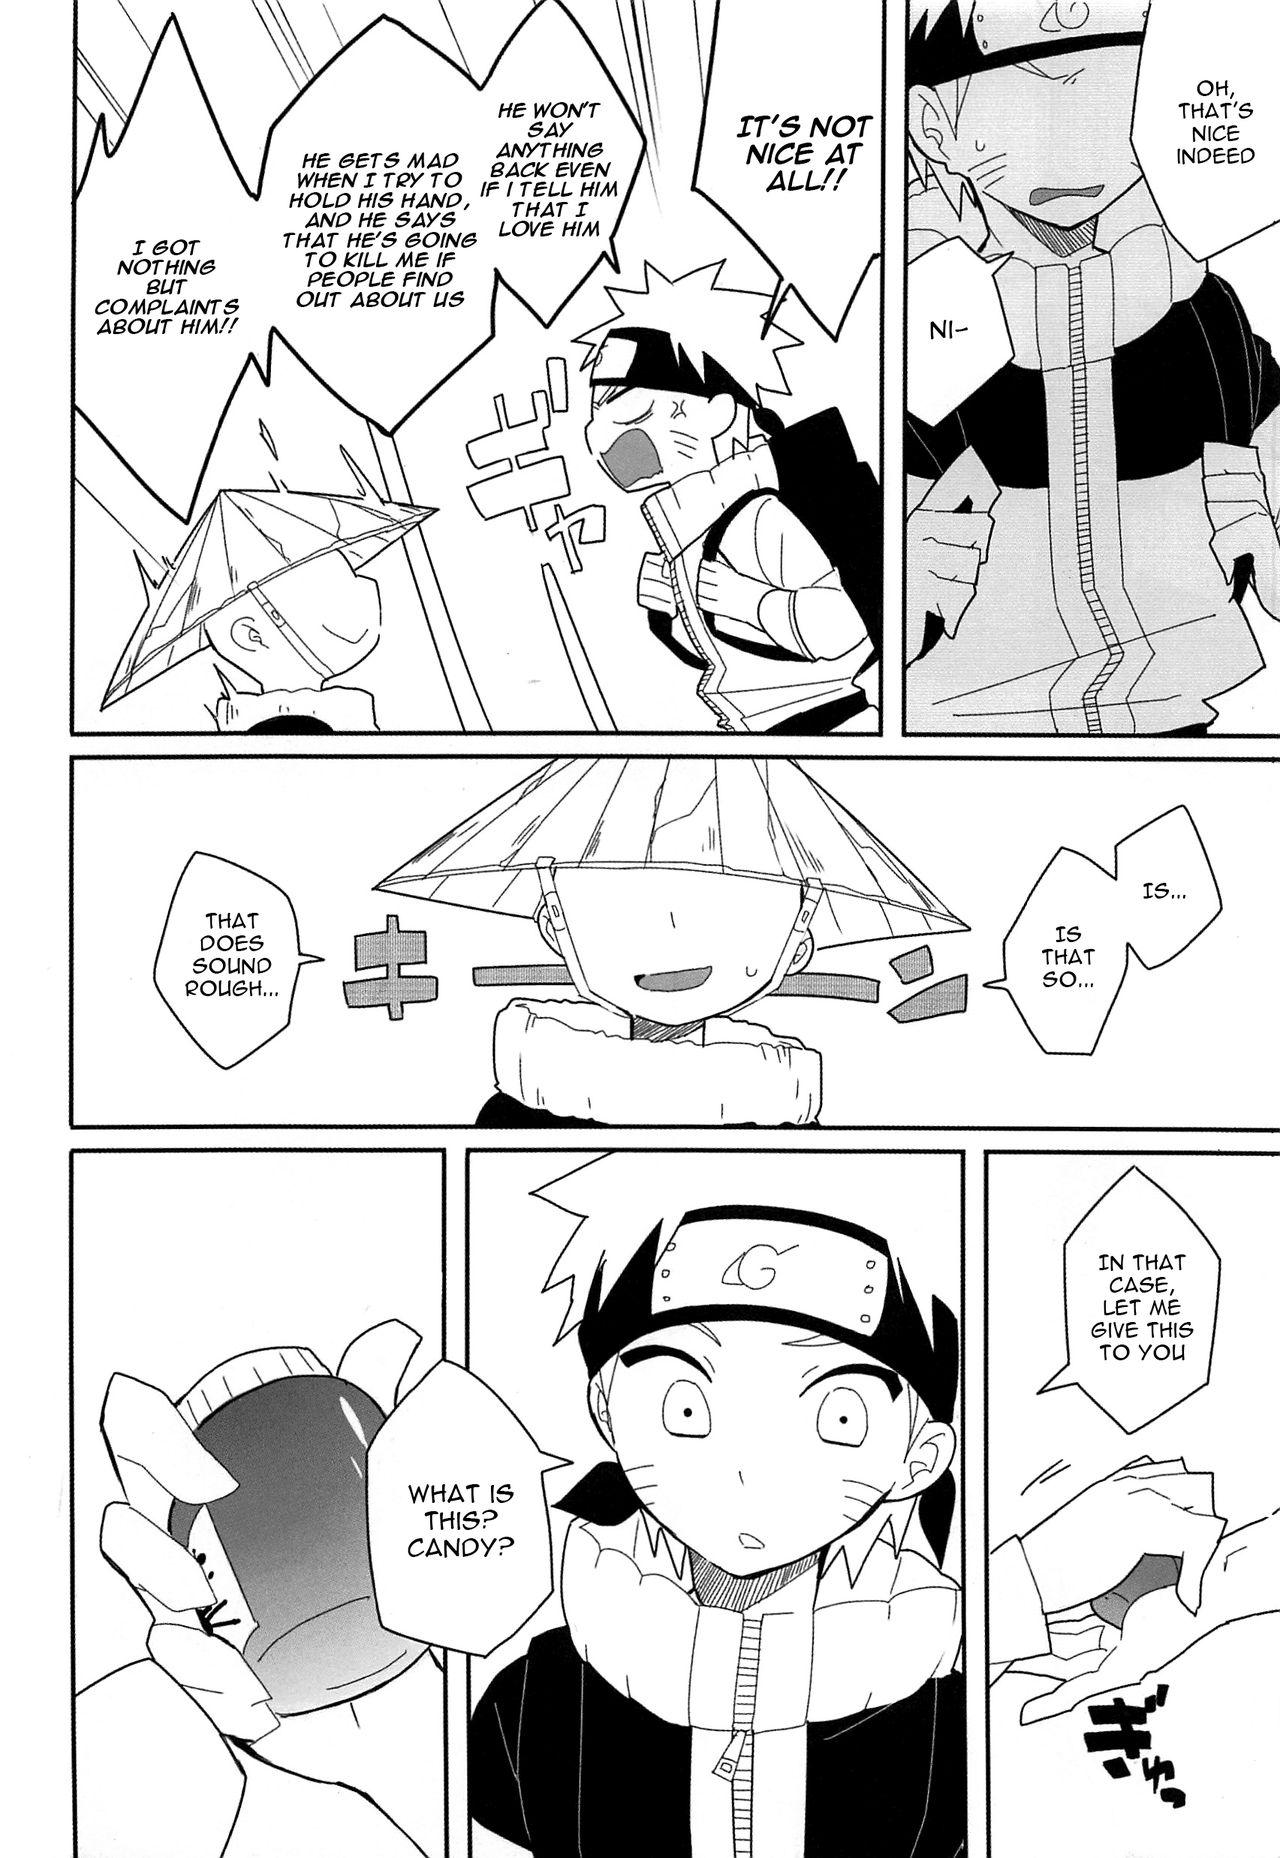 Shy Break through - Naruto Putita - Page 9